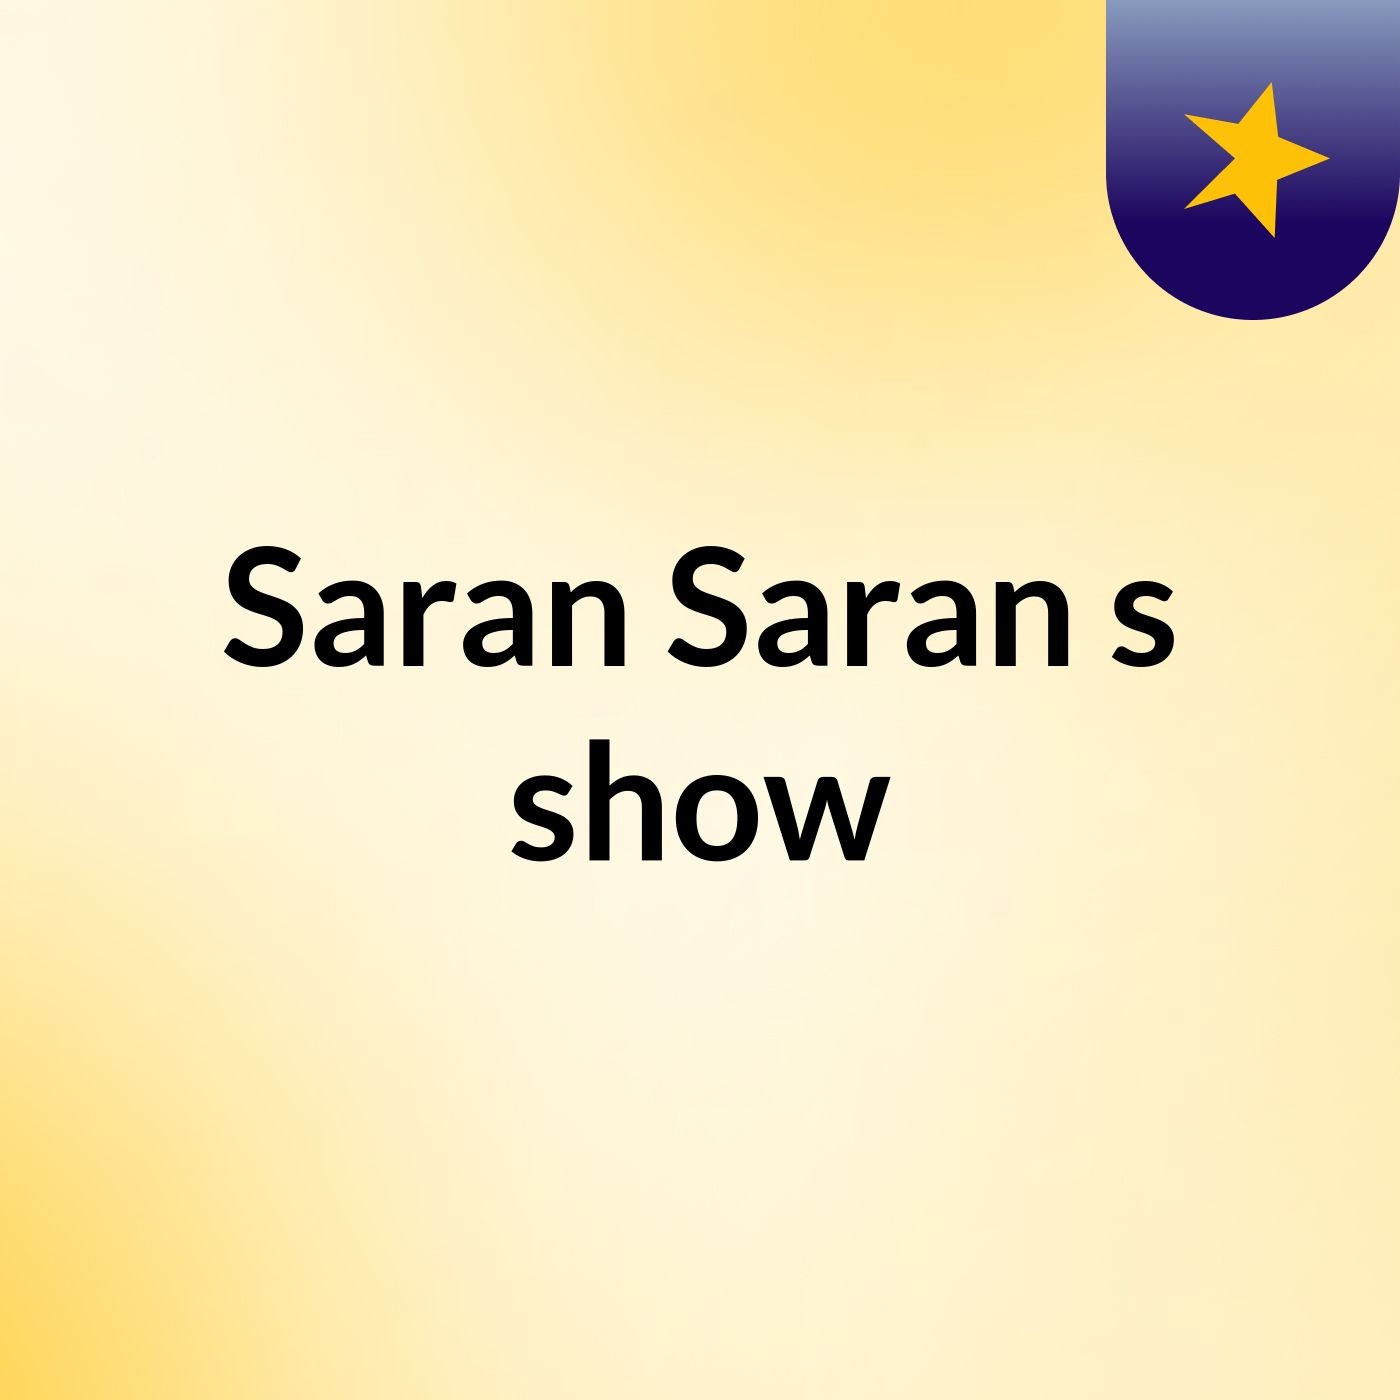 Episode 2 - Saran Saran's show